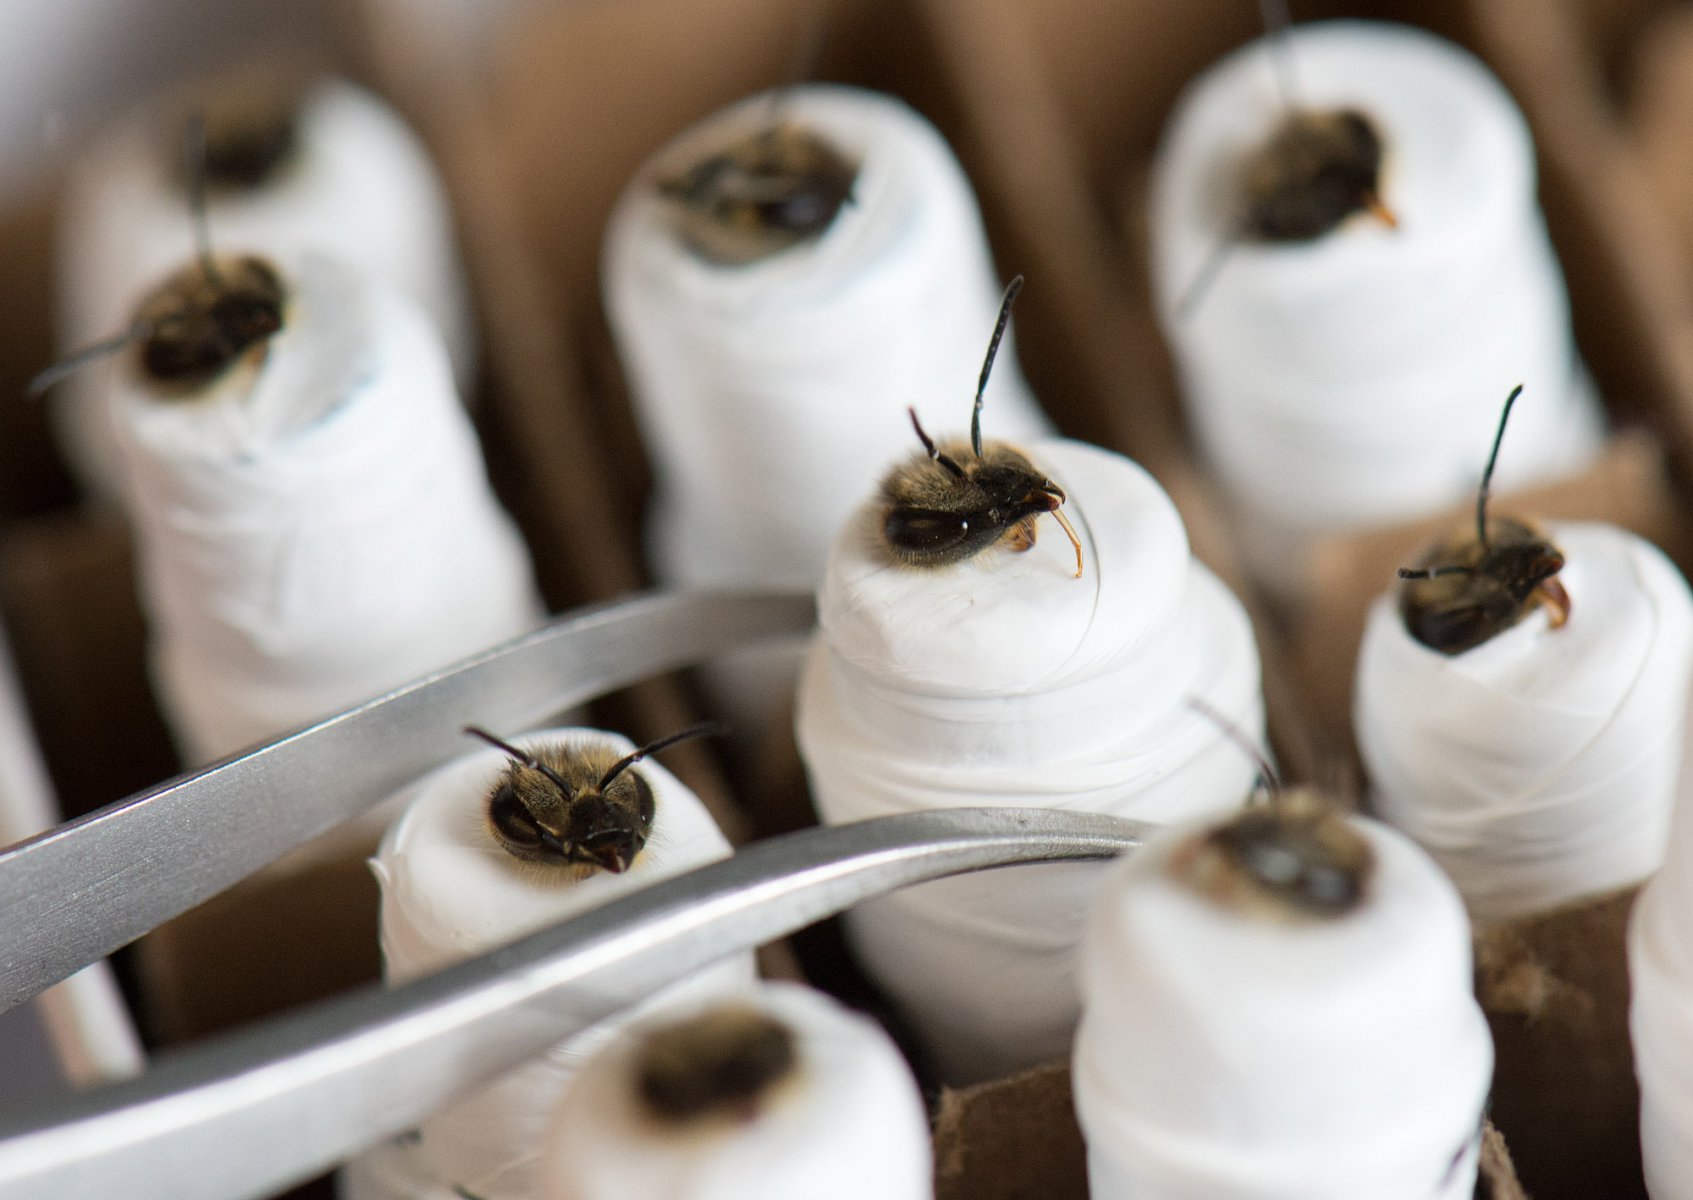 Wie Mumien in Kunststoff gewickelt warten Bienen am 25.06.2013 am Forschungsschwerpunkt "Insektenbiotechnologie" in Gießen auf ihre Fütterung. Unterschiedliche Insektenarten werden hier z.B. so konditioniert, dass sie u.a. auf Sprengstoff oder Drogen reagieren. Foto: Boris Roessler/dpa 